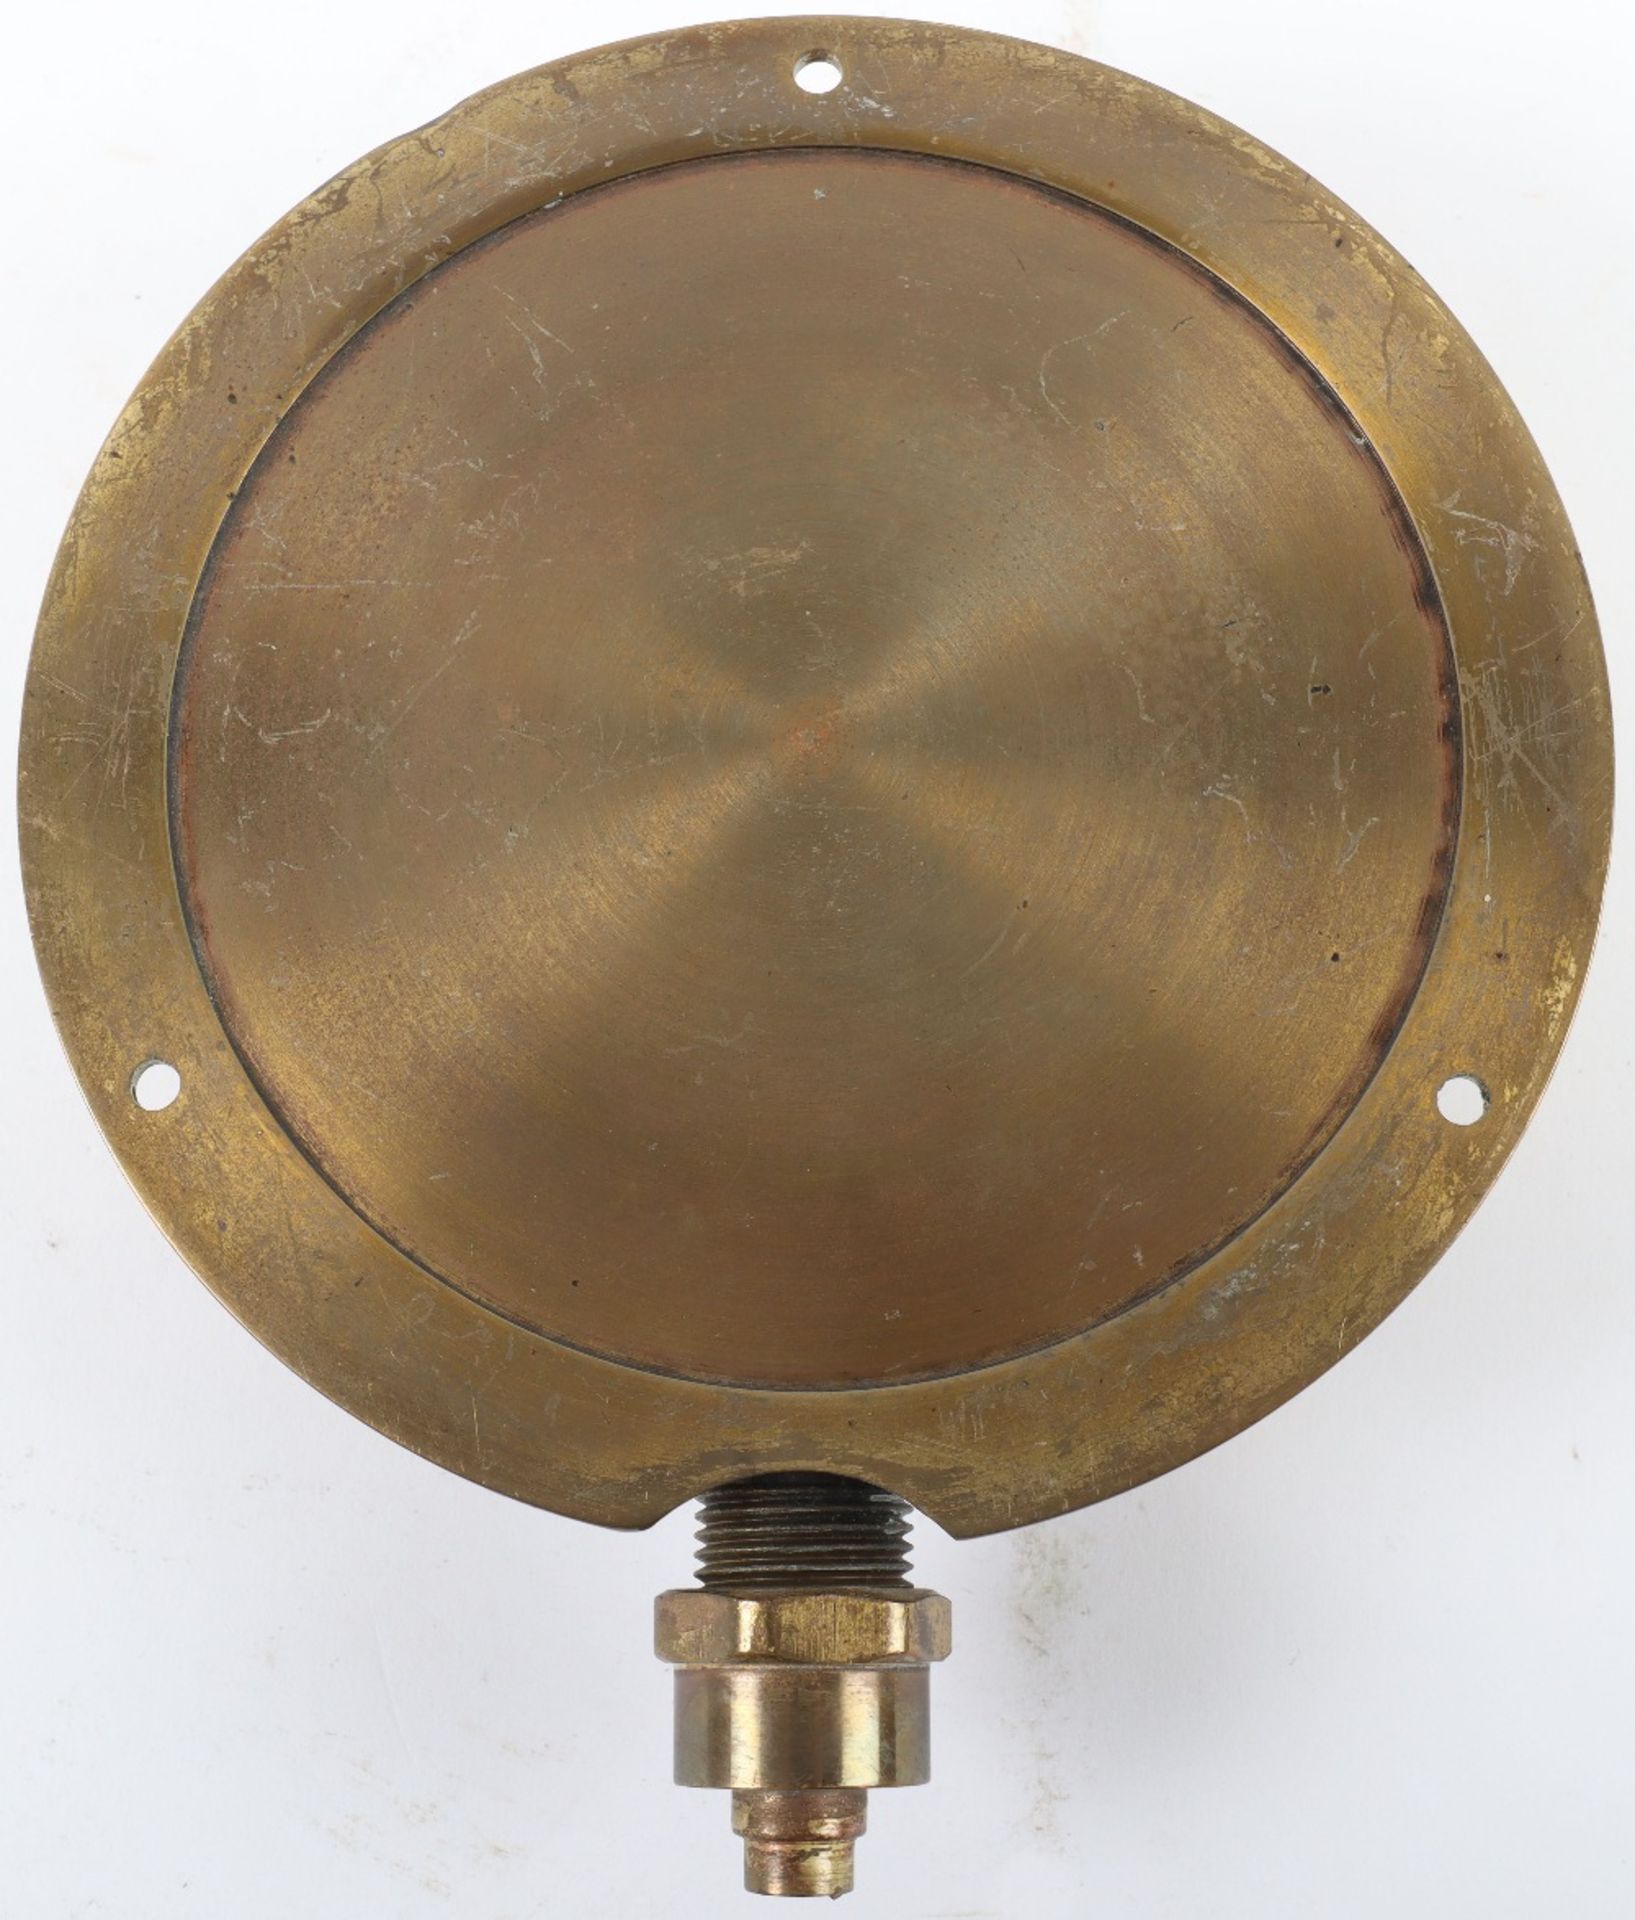 A Salter Traction Engine Gauge pressure gauge - Image 3 of 3